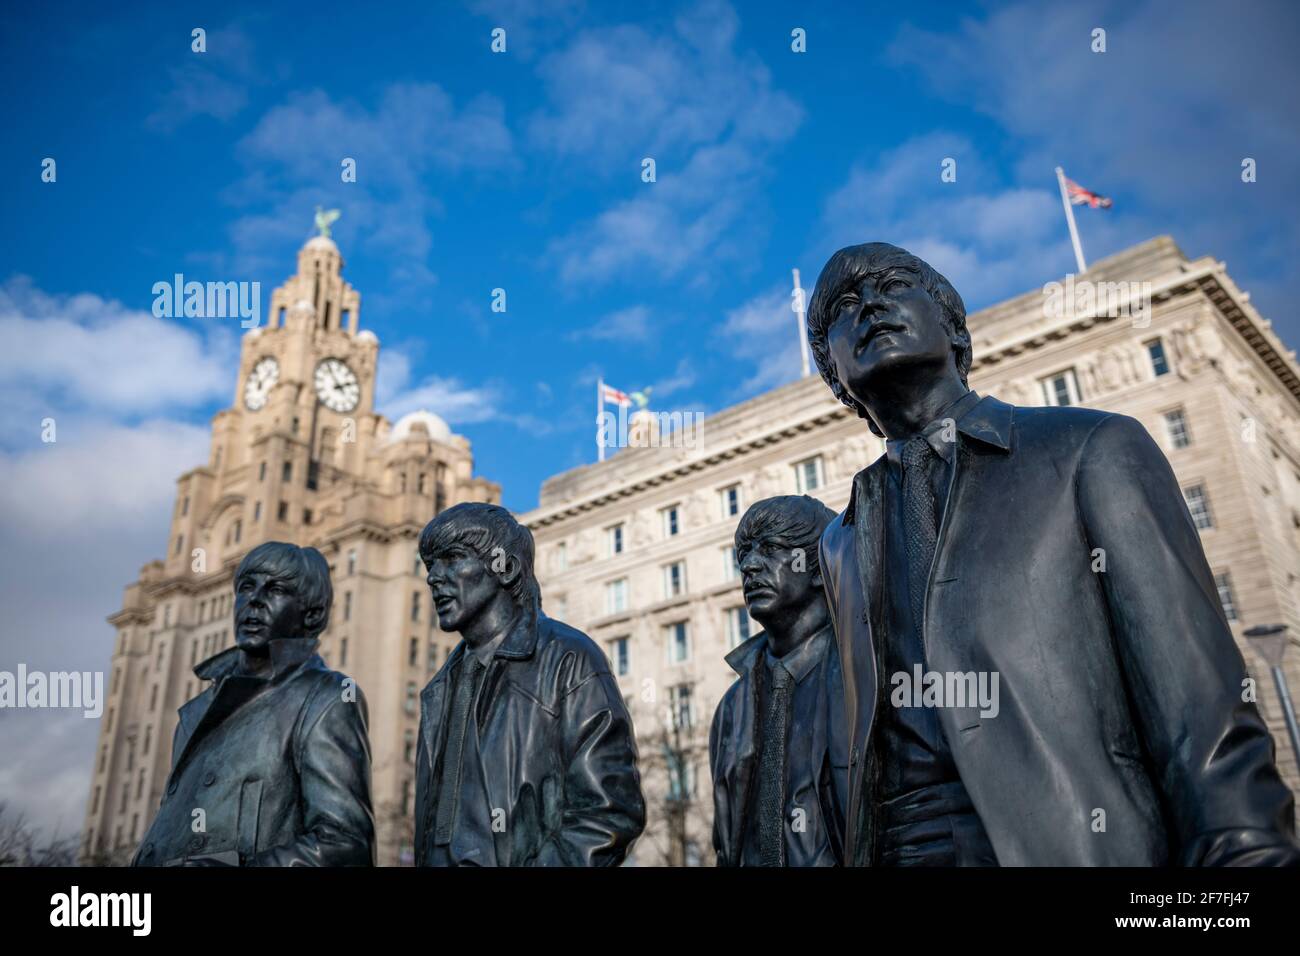 La statua in bronzo dei Beatles si trova sul lungomare di Liverpool, Liverpool, Merseyside, Inghilterra, Regno Unito, Europa Foto Stock